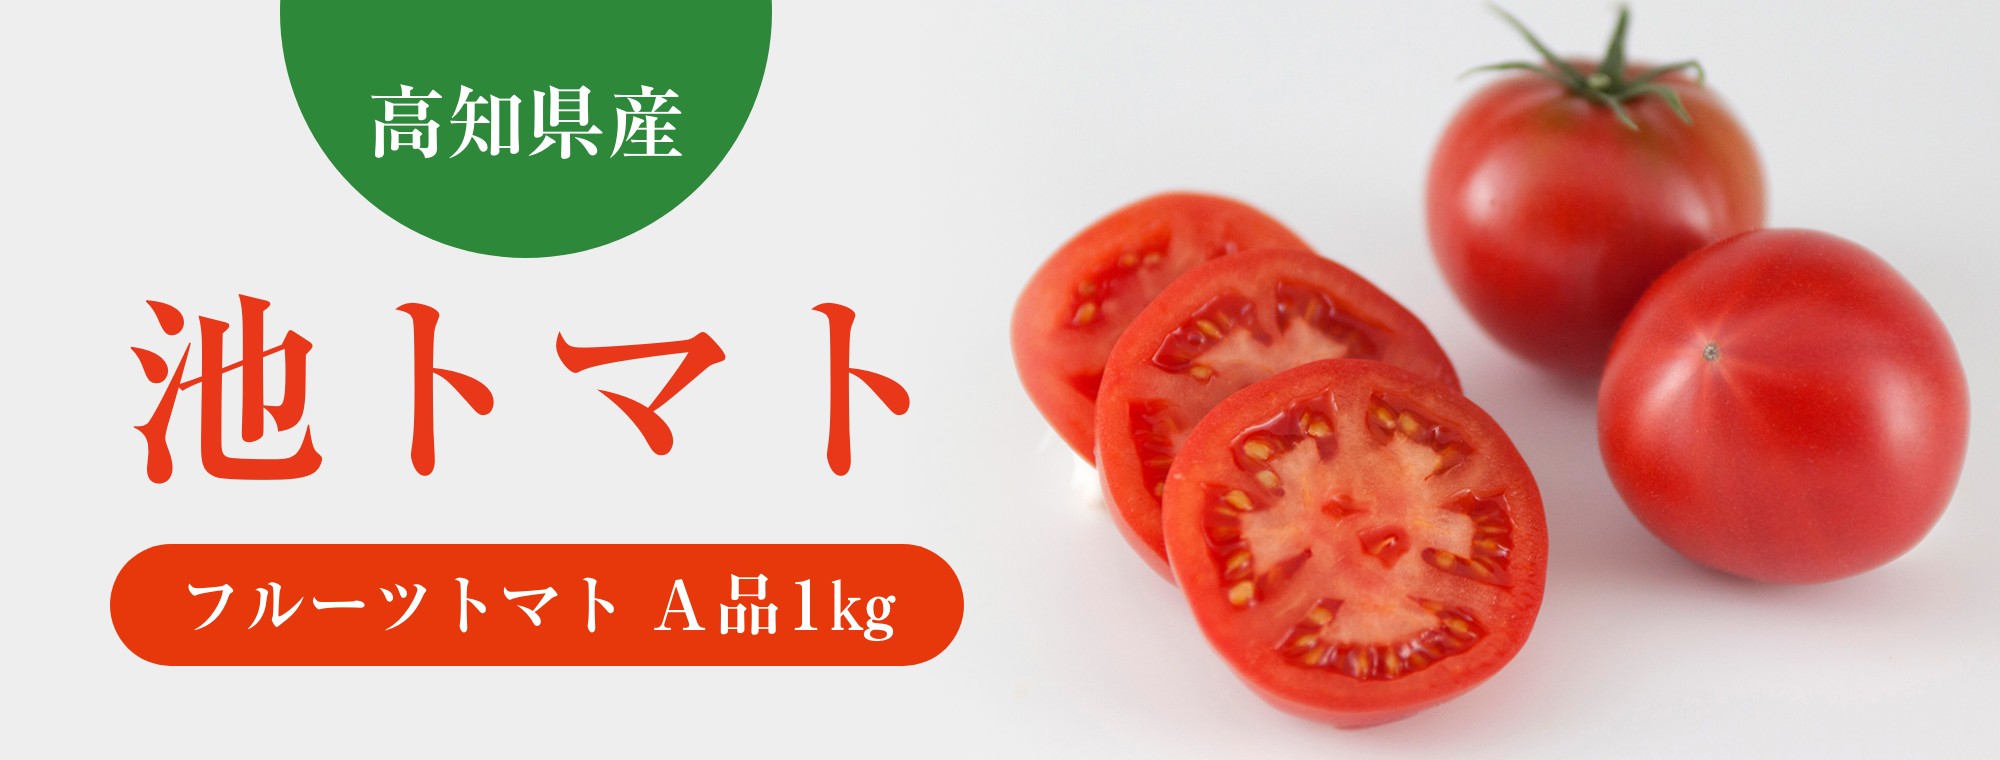 高知県産 池トマト